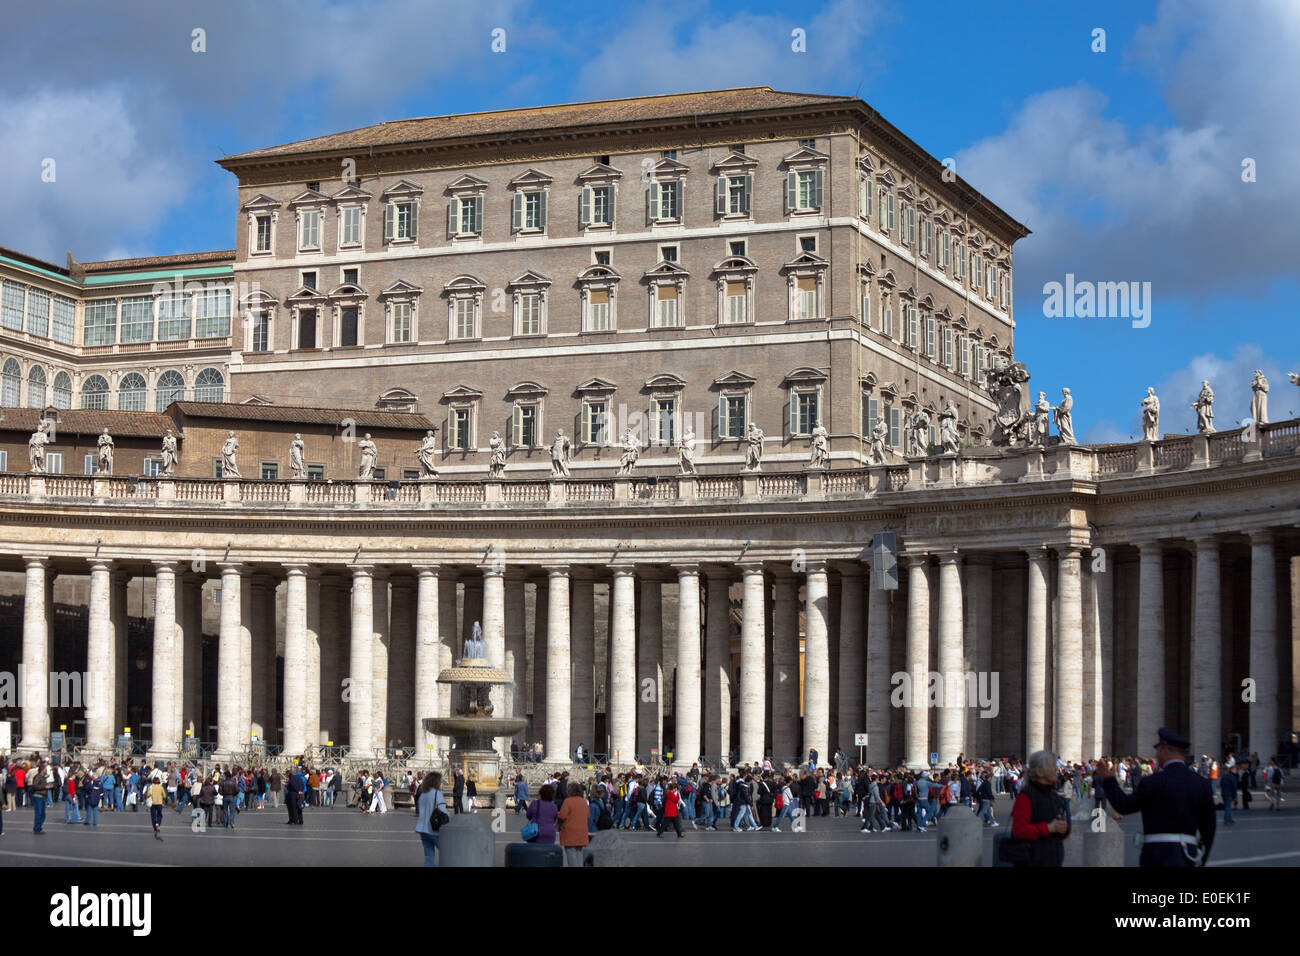 Apostolischer Palast, Vatikan - Apostolic Palace, Vatican Stock Photo